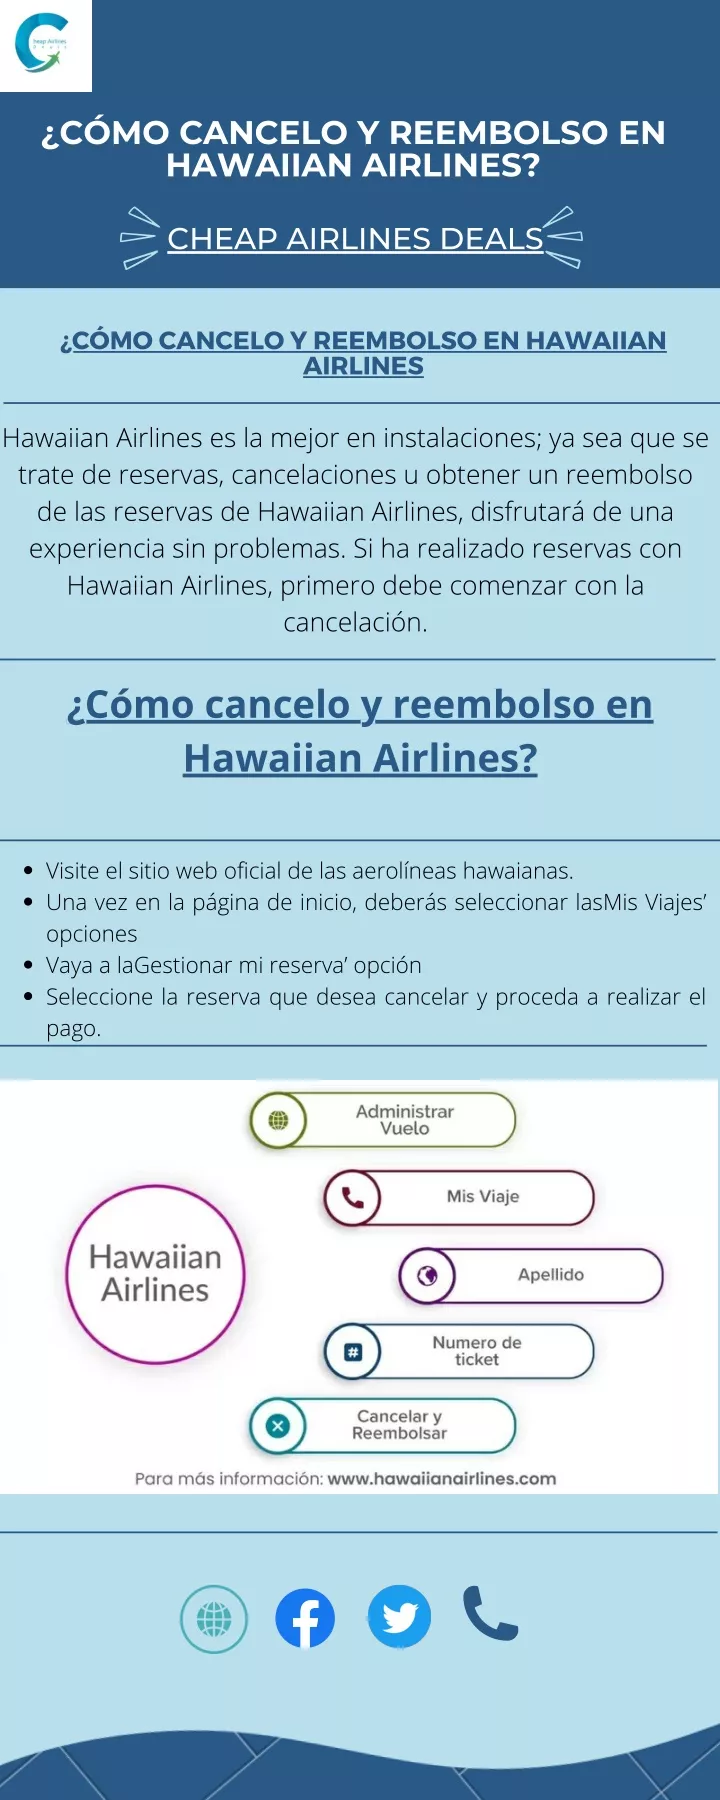 c mo cancelo y reembolso en hawaiian airlines